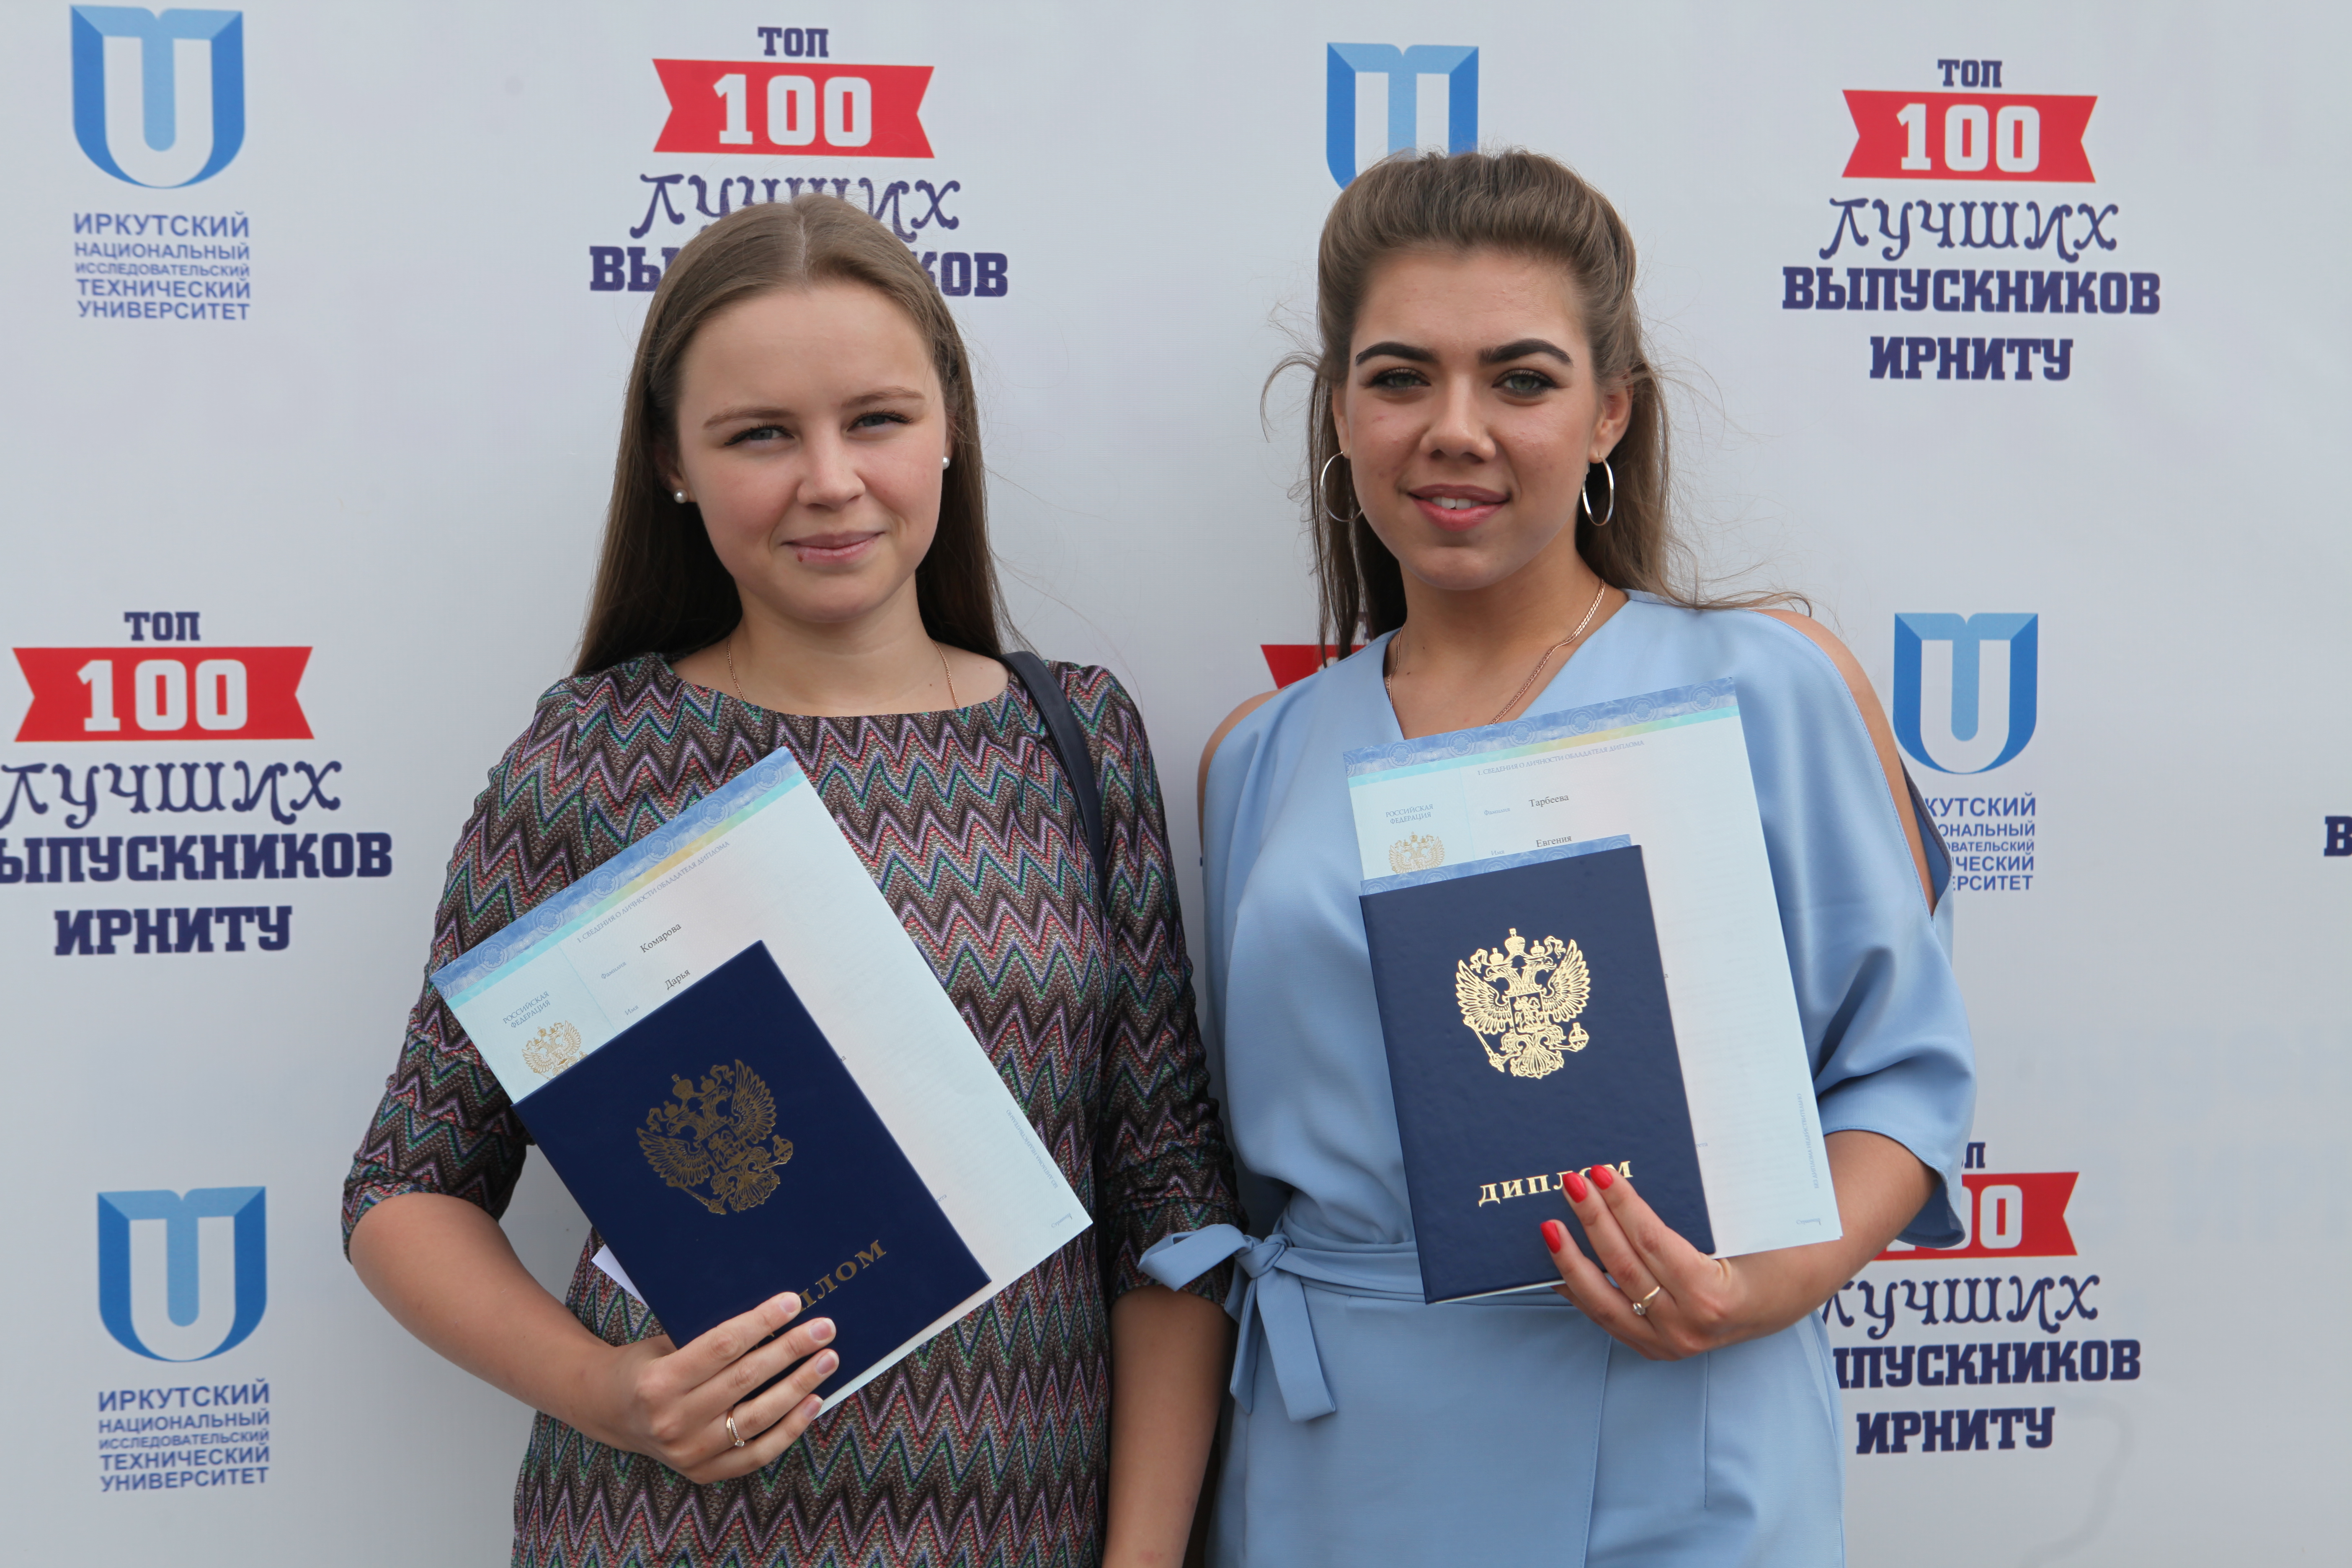 Обучение в польше для белорусов: условия поступления, получение образования, проживание и выдача дипломов - fin-az.ru